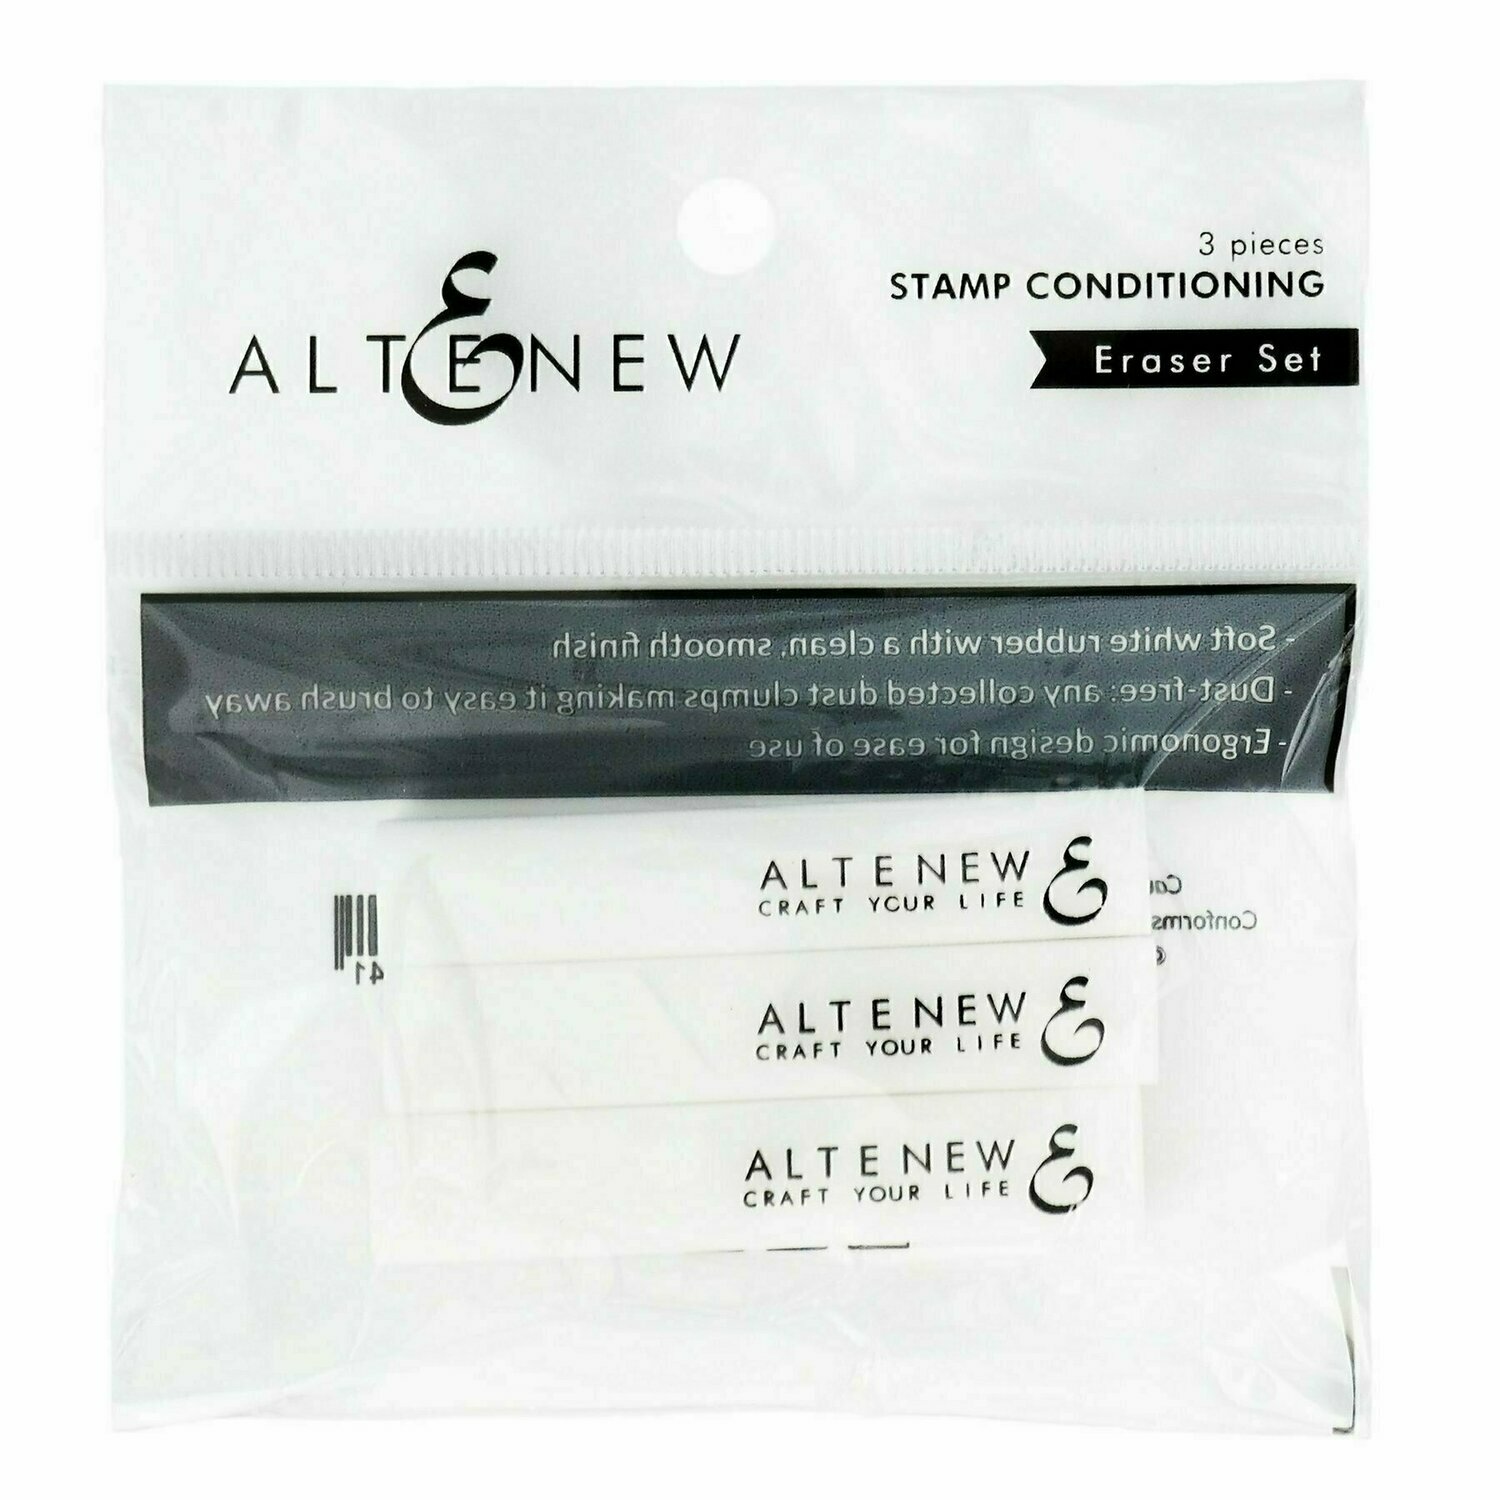 Stamp Conditioning Eraser Set from Altenew